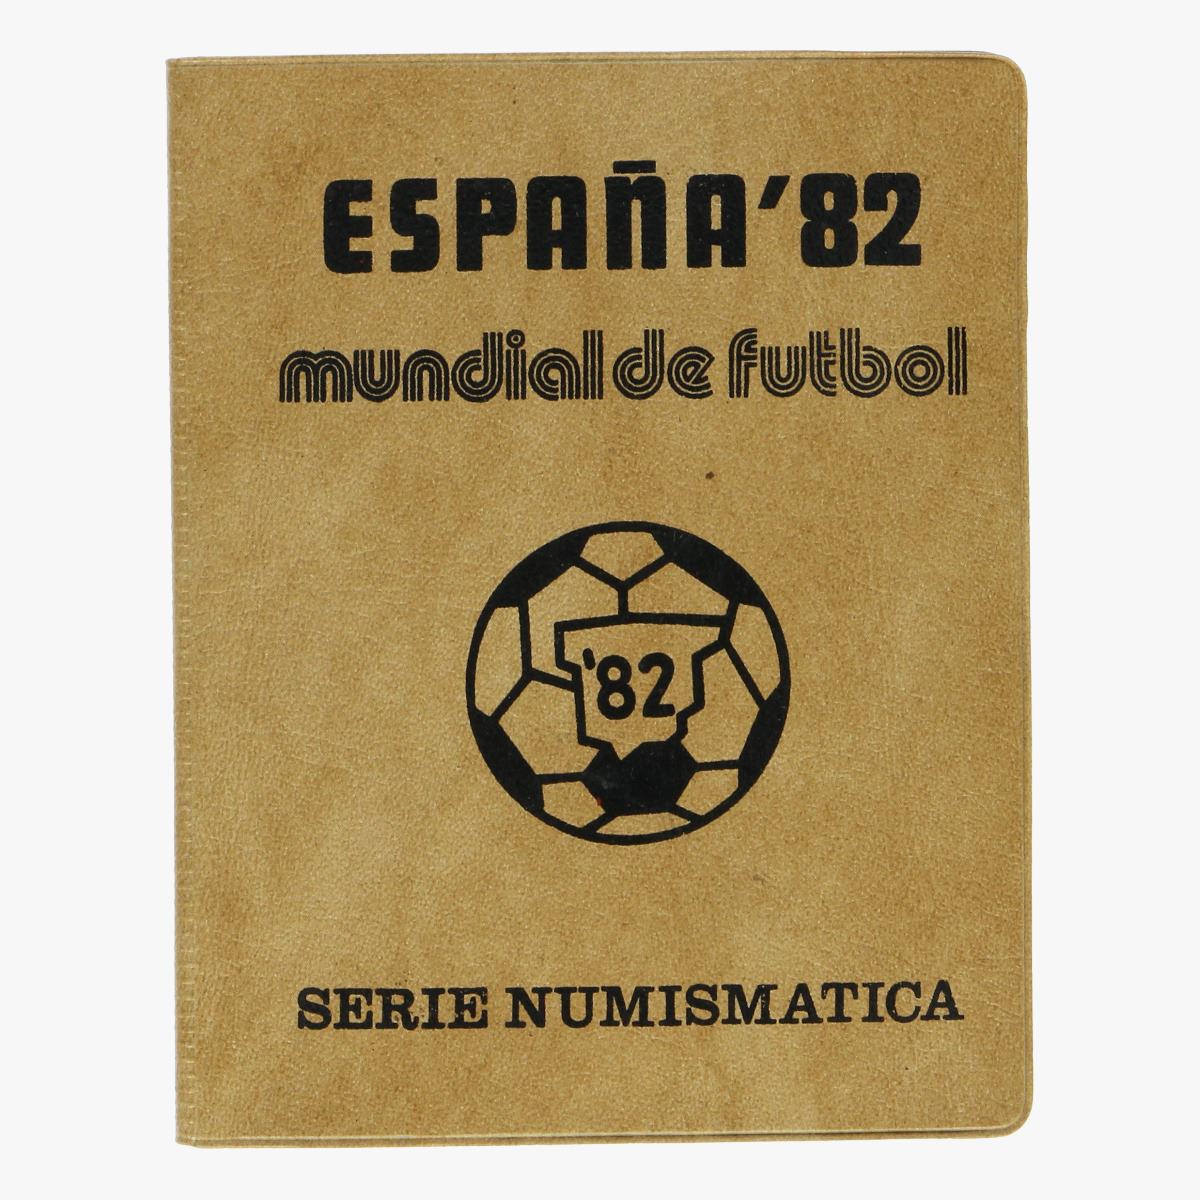 Afbeeldingen van collectie munten espana'82 mundial de futbol 